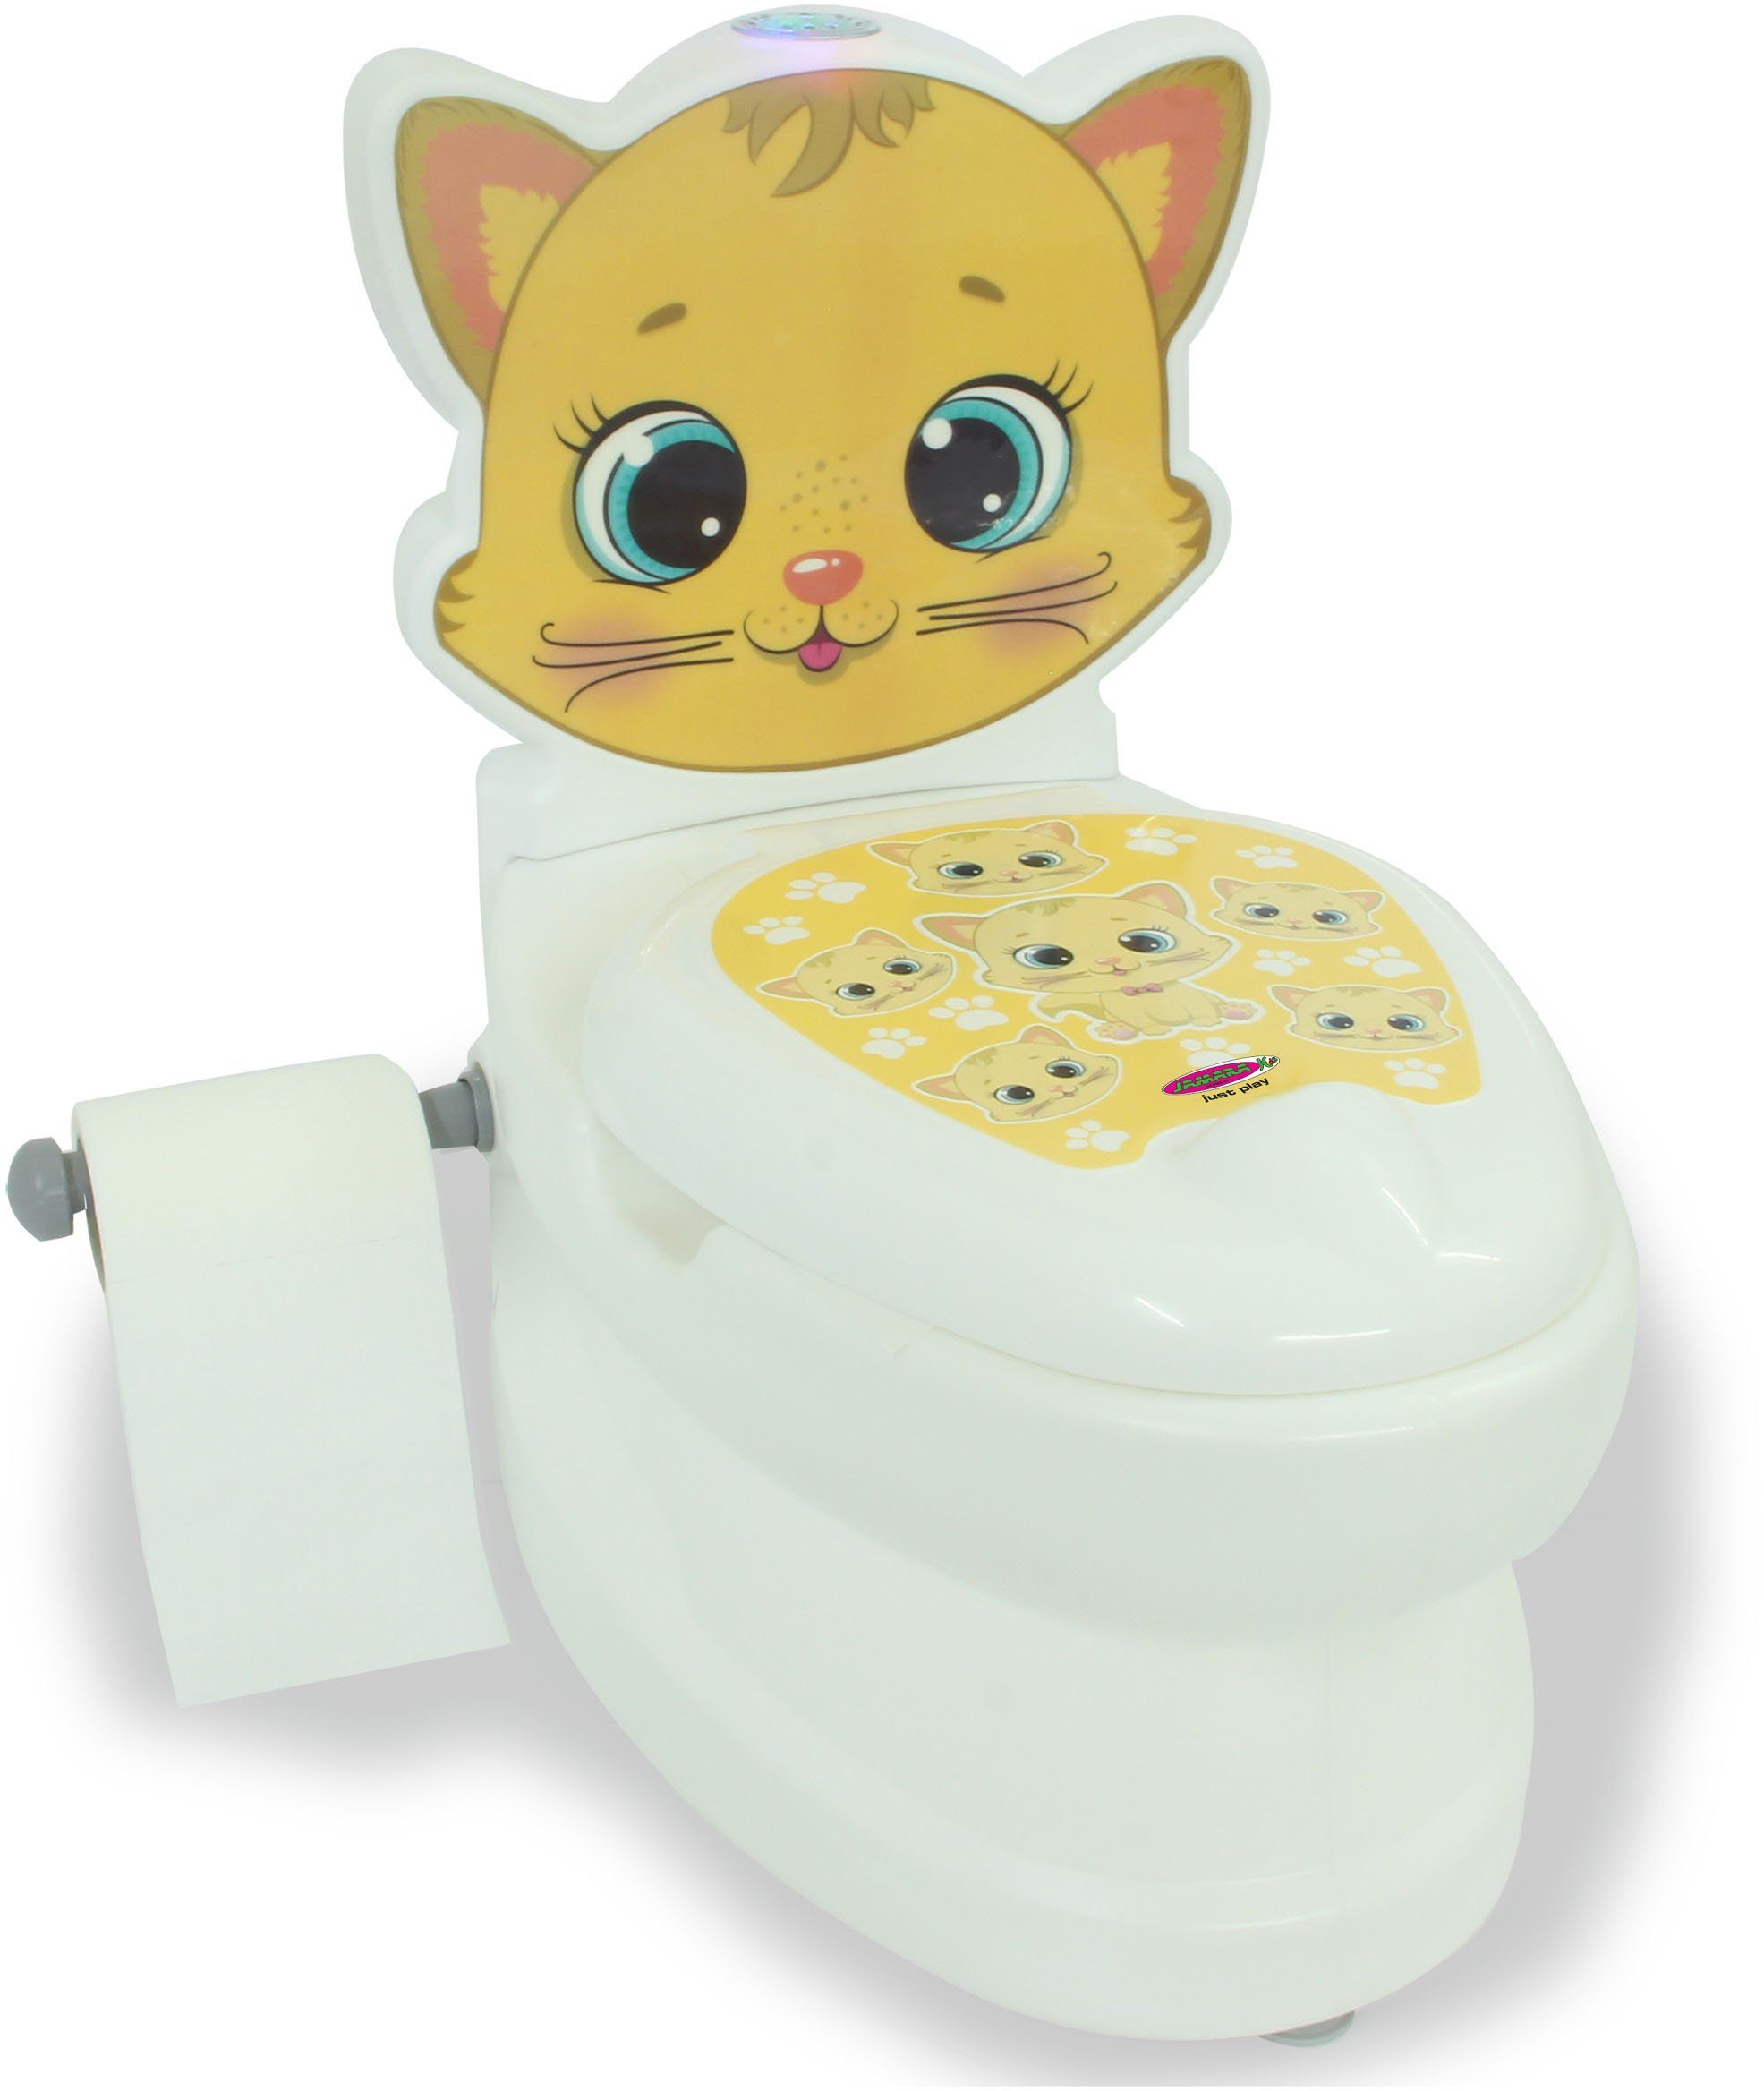 Jamara Toilettentrainer Meine kleine Toilette, mit Toilettenpapierhalter Katze, Spülsound und